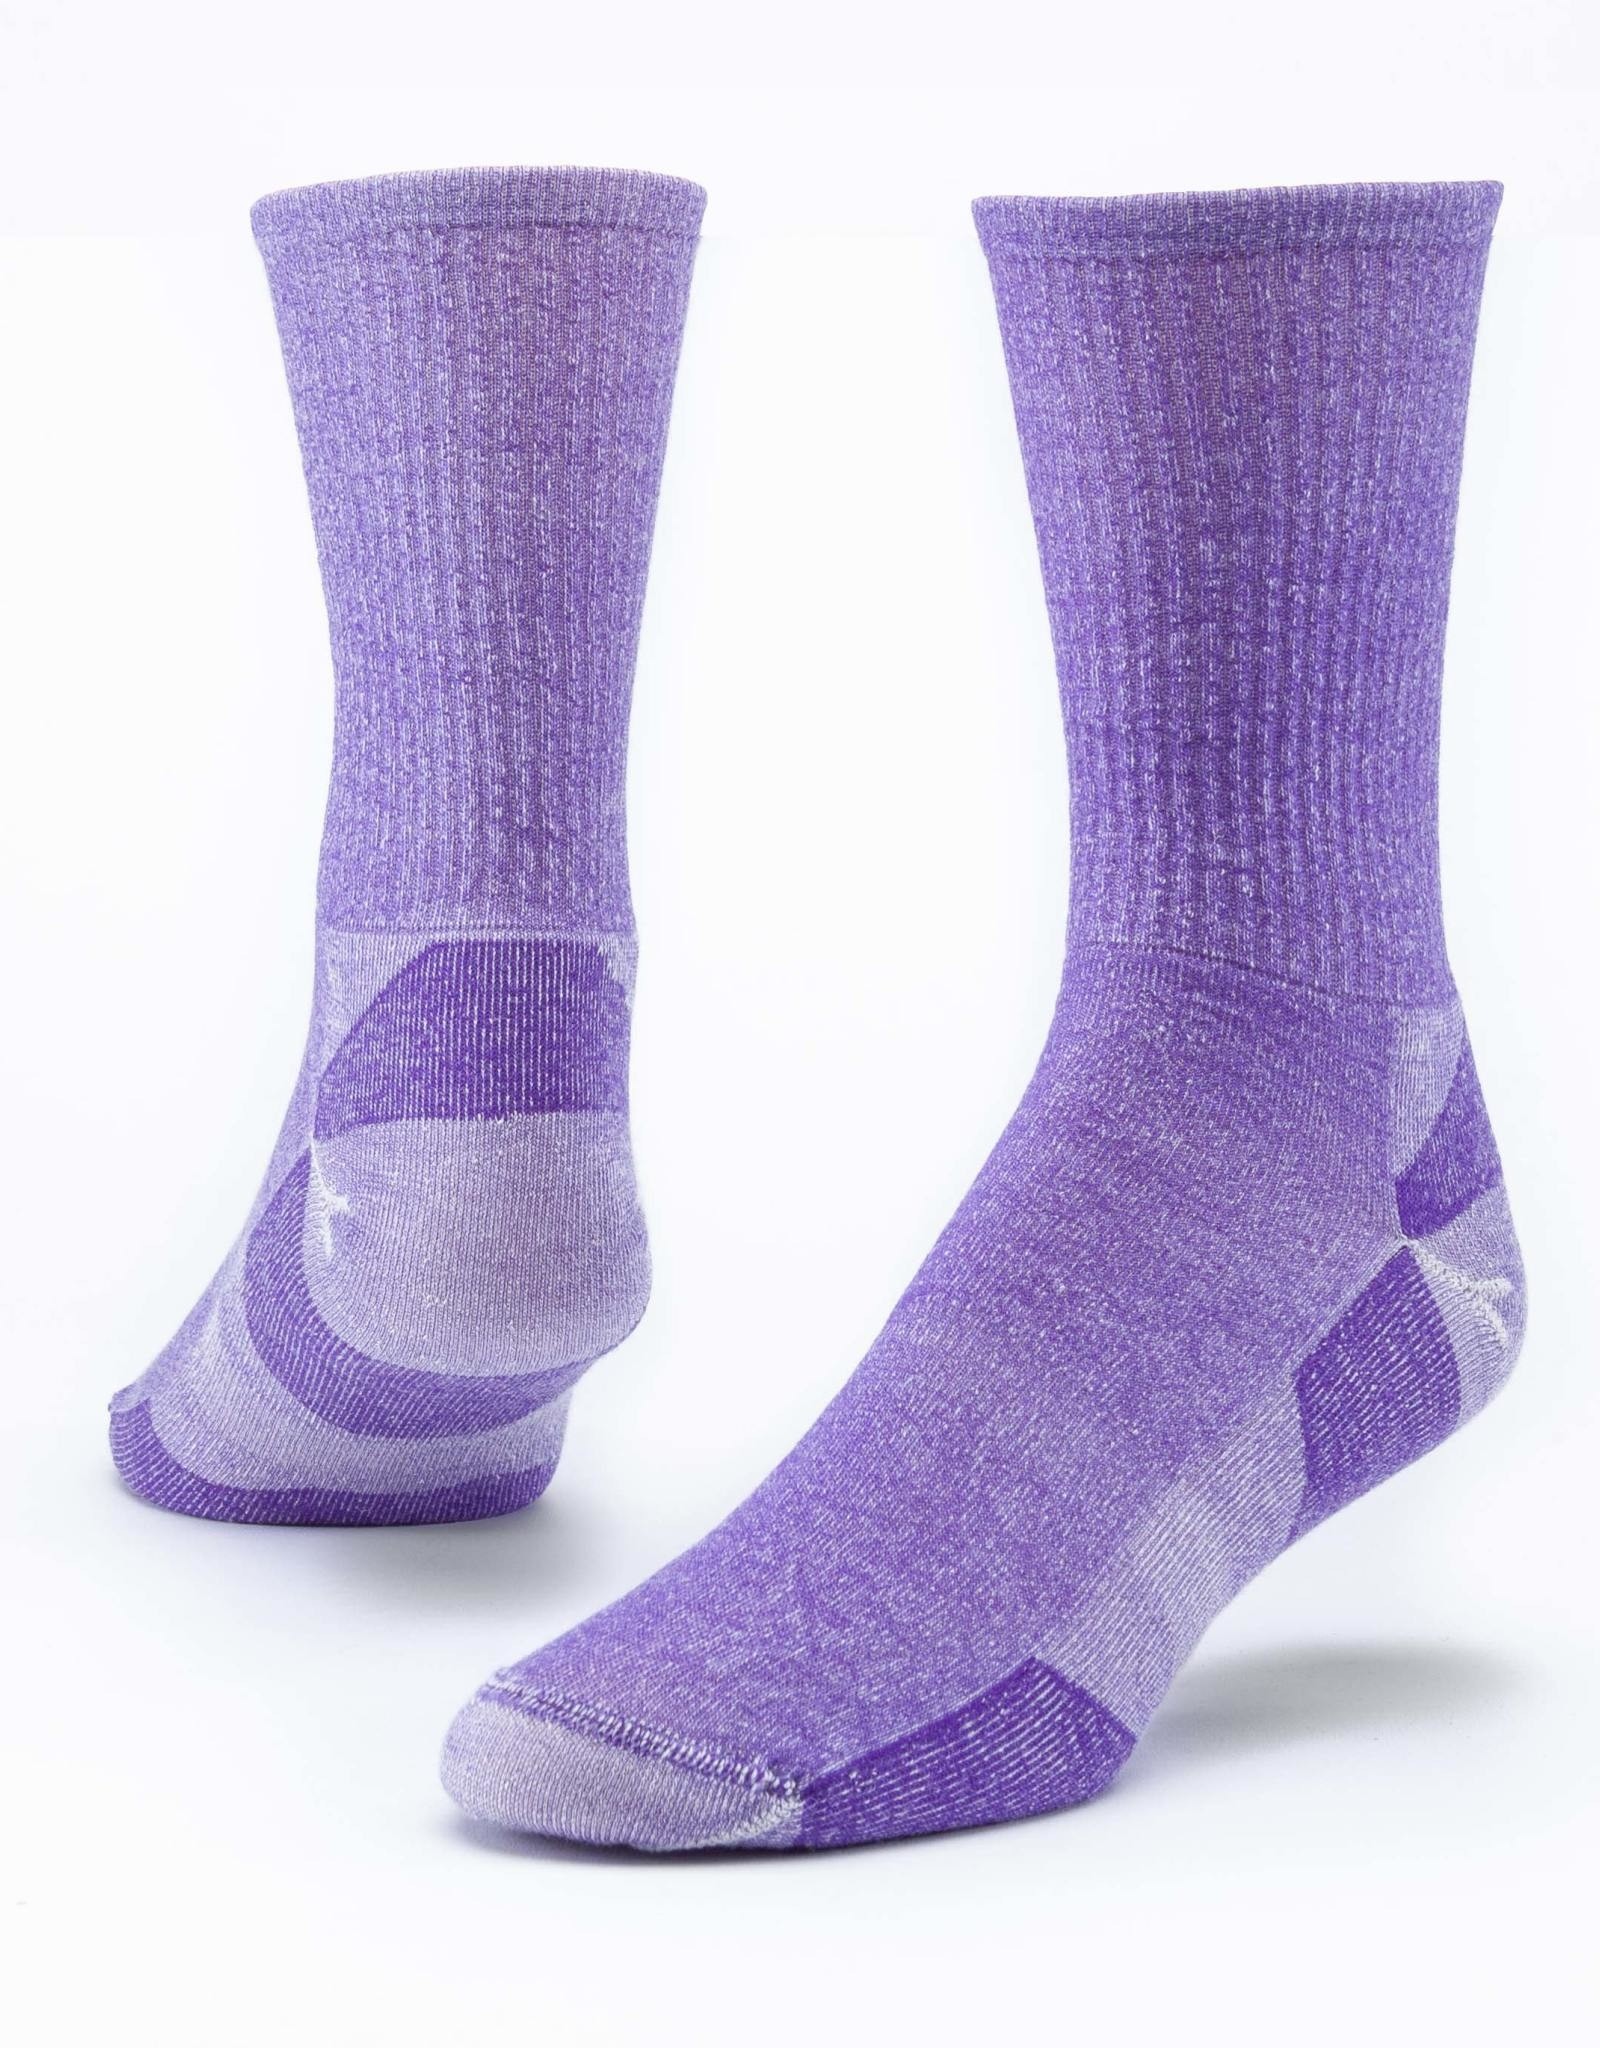 Maggie's Organics Urban Hiker Wool Crew Socks (Purple)